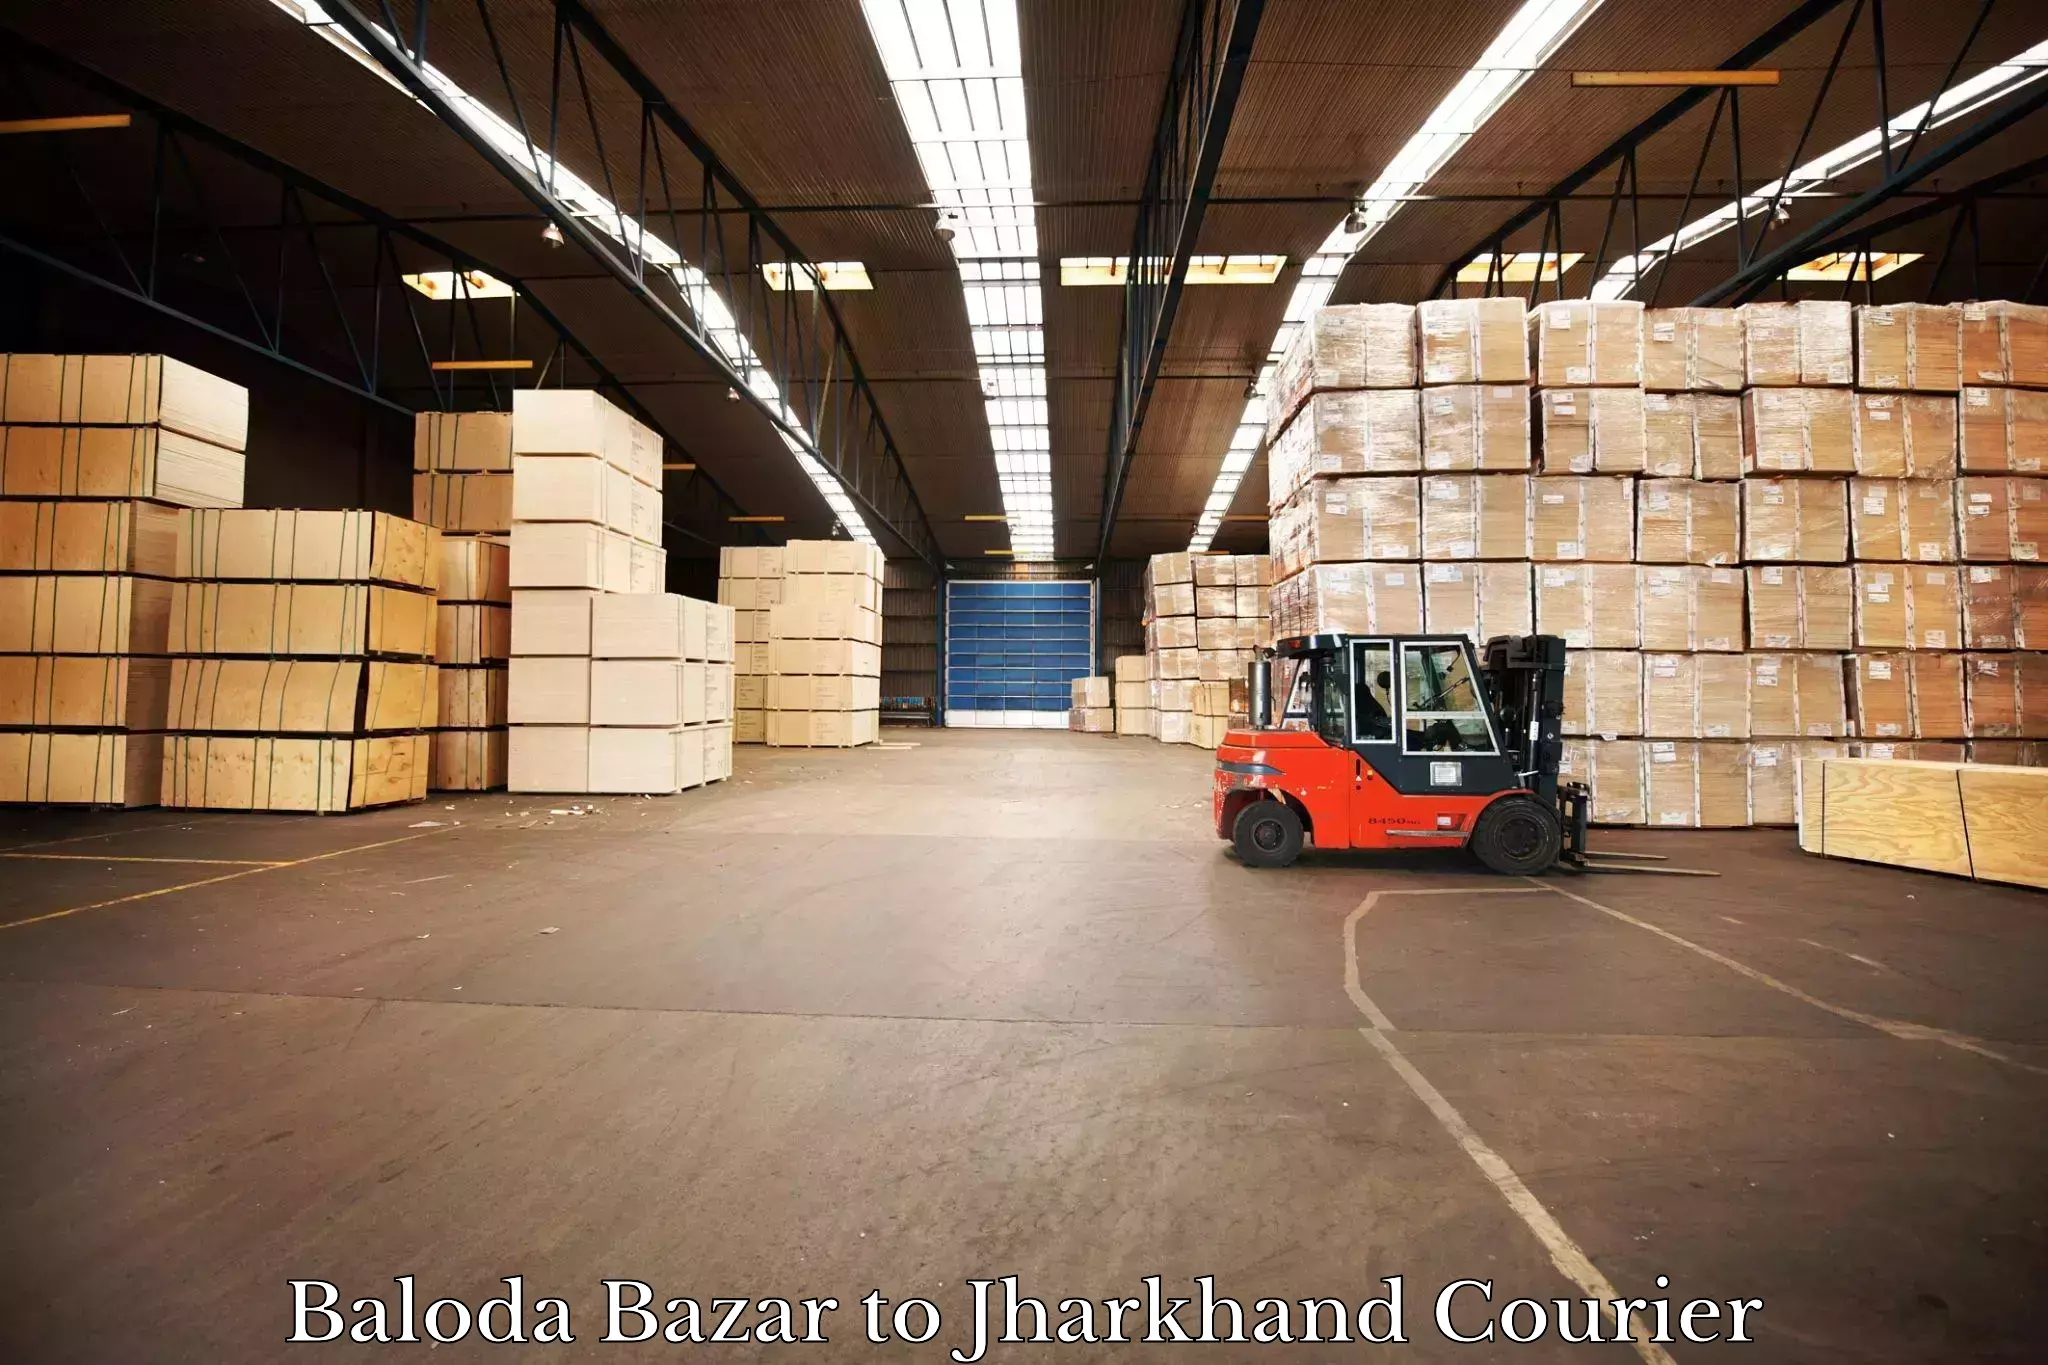 Express courier capabilities Baloda Bazar to Simdega